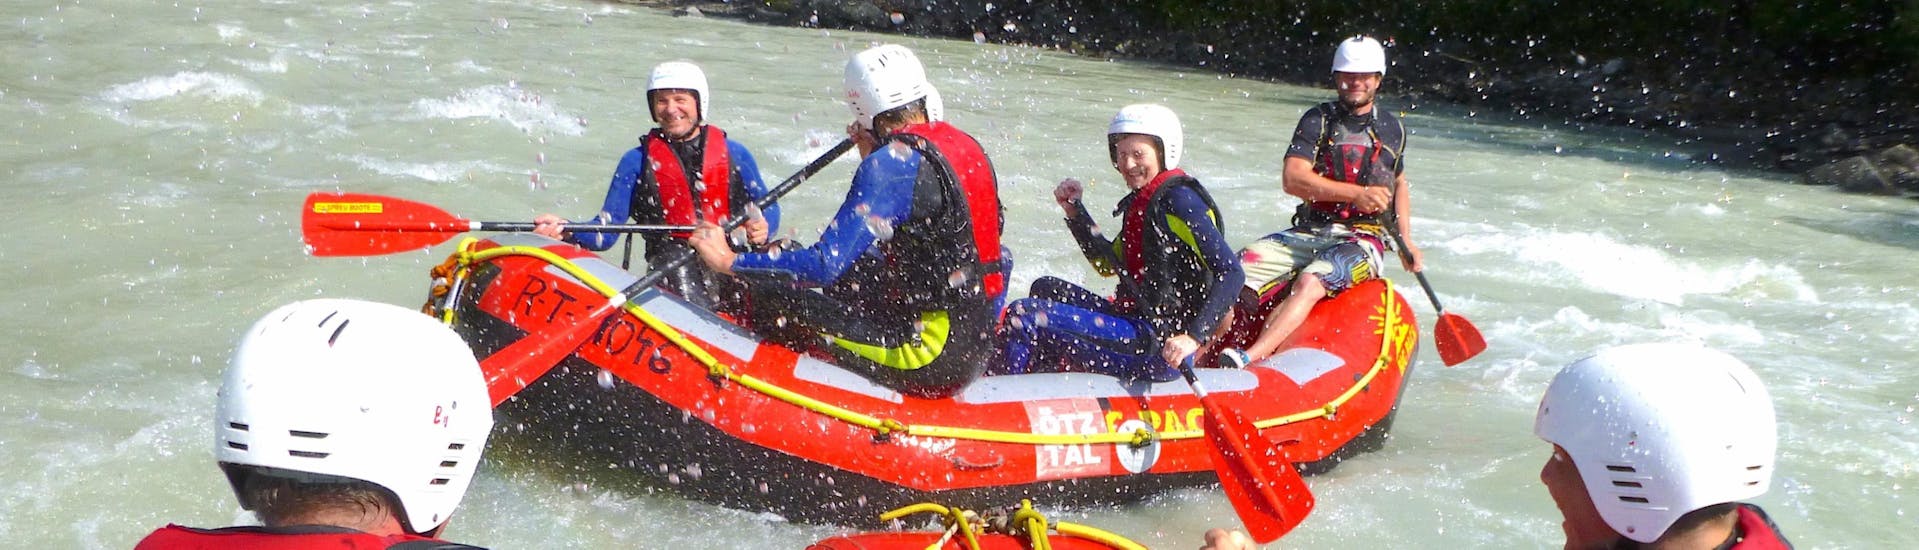 Beim Rafting “Action” für Jung & Alt - Imster Schlucht mit CanKick Ötztal werden die fröhlichen Teilnehmer mit Wasser nassgespritzt.